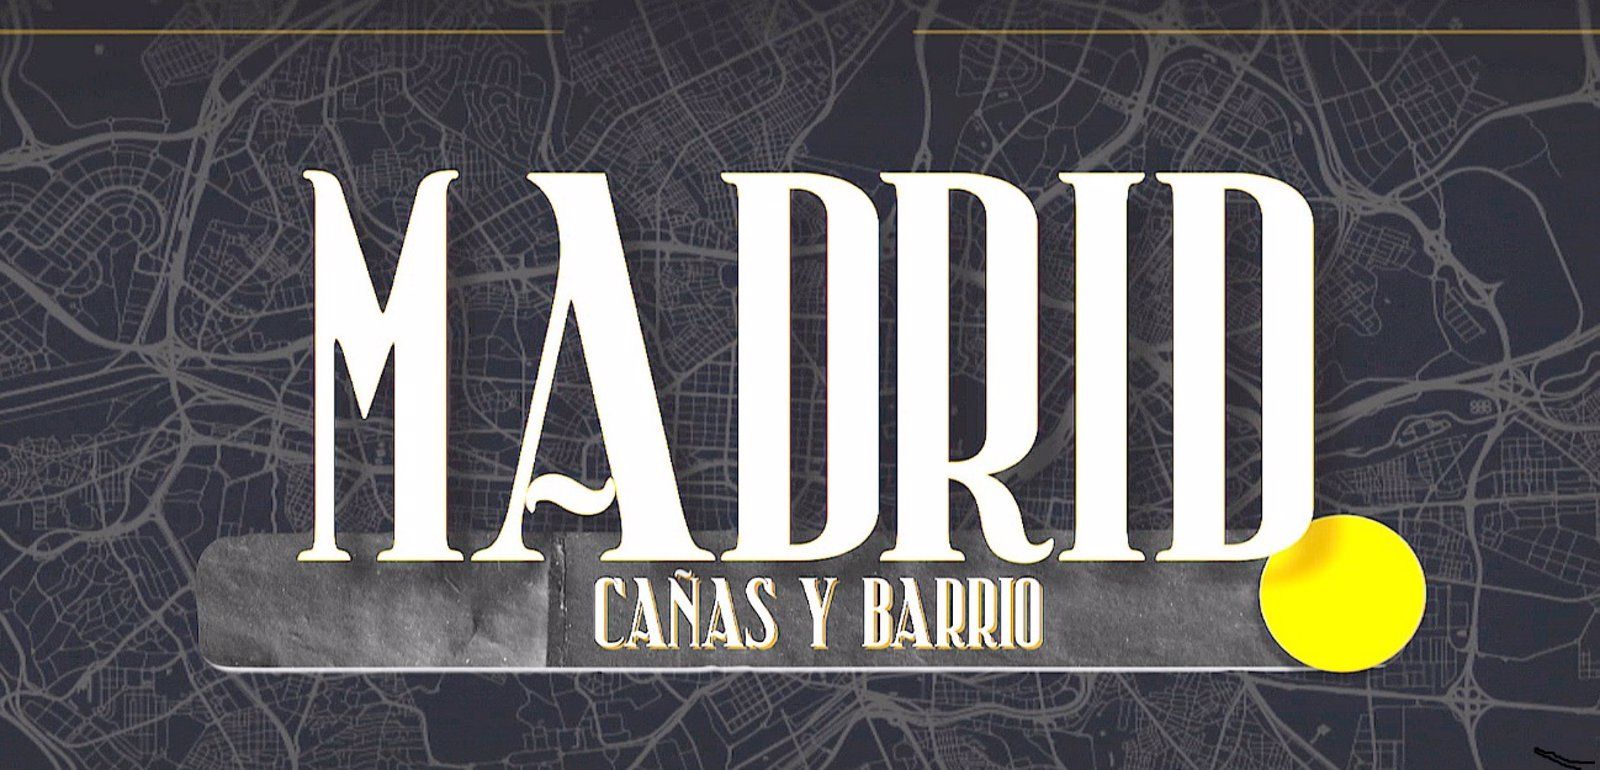 'Cañas y Barrio': Descubre Madrid a través de sus bares con Telemadrid